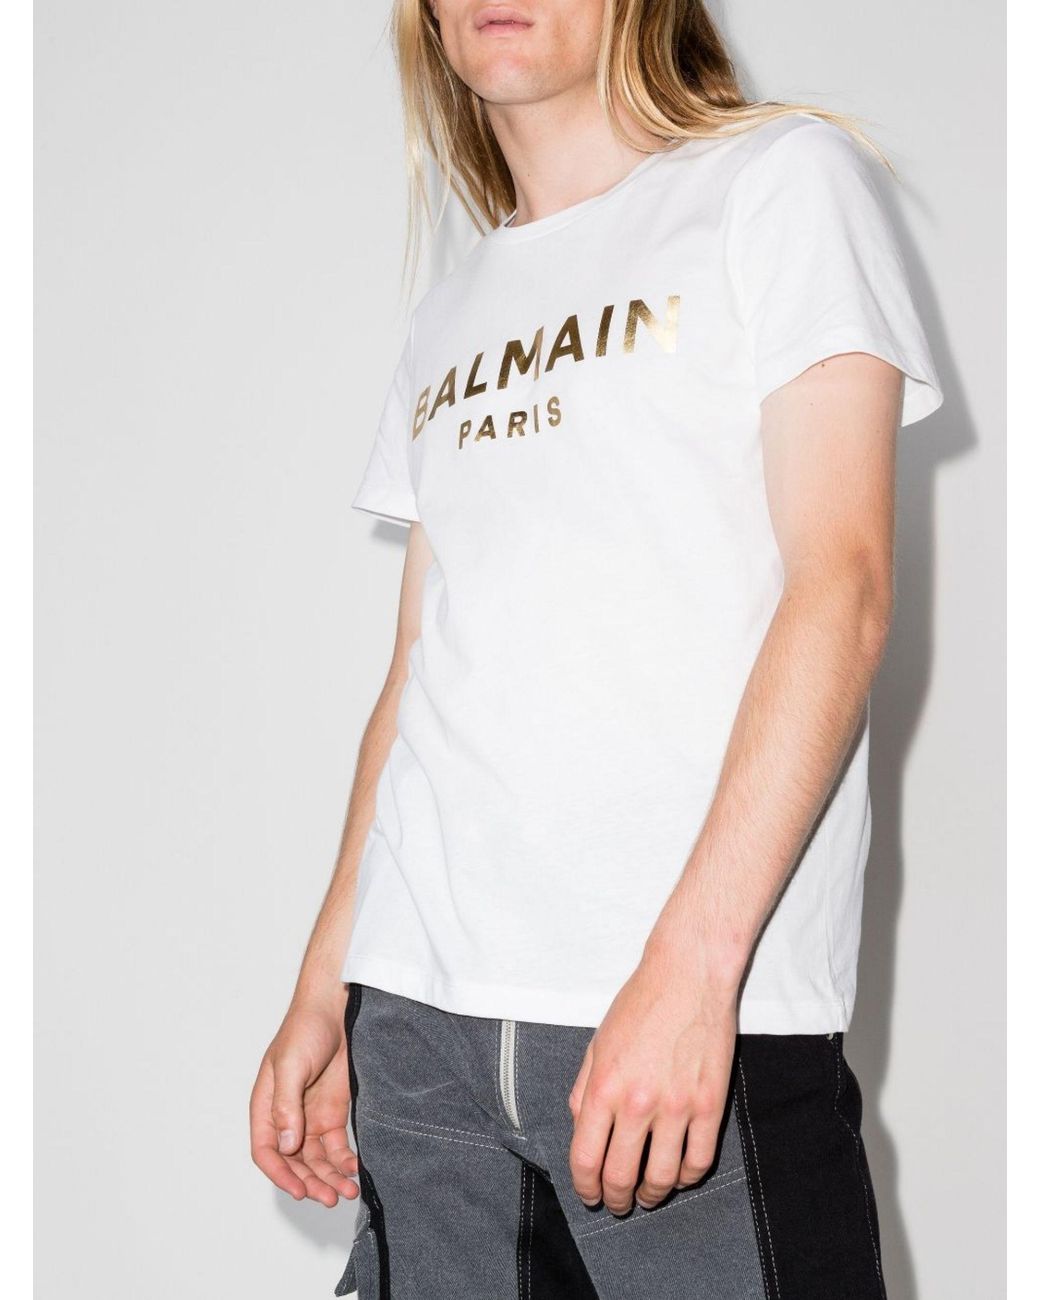 Balmain Foil Logo Cotton T-shirt in White for Men | Lyst